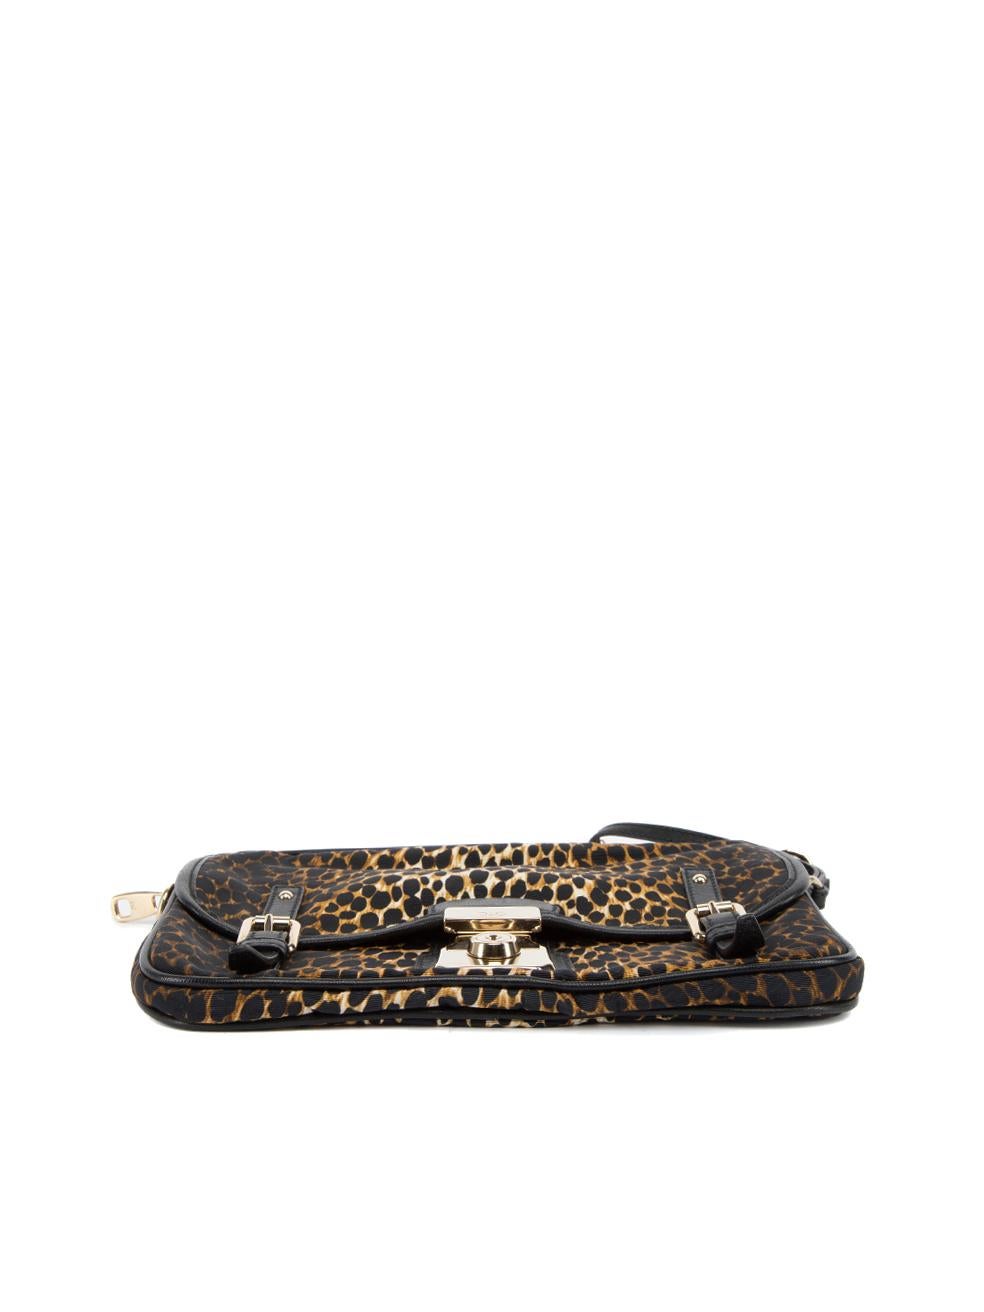 Pre-Loved Dolce & Gabbana Women's Leopard Print Allyson Wristlet Clutch Bag 1